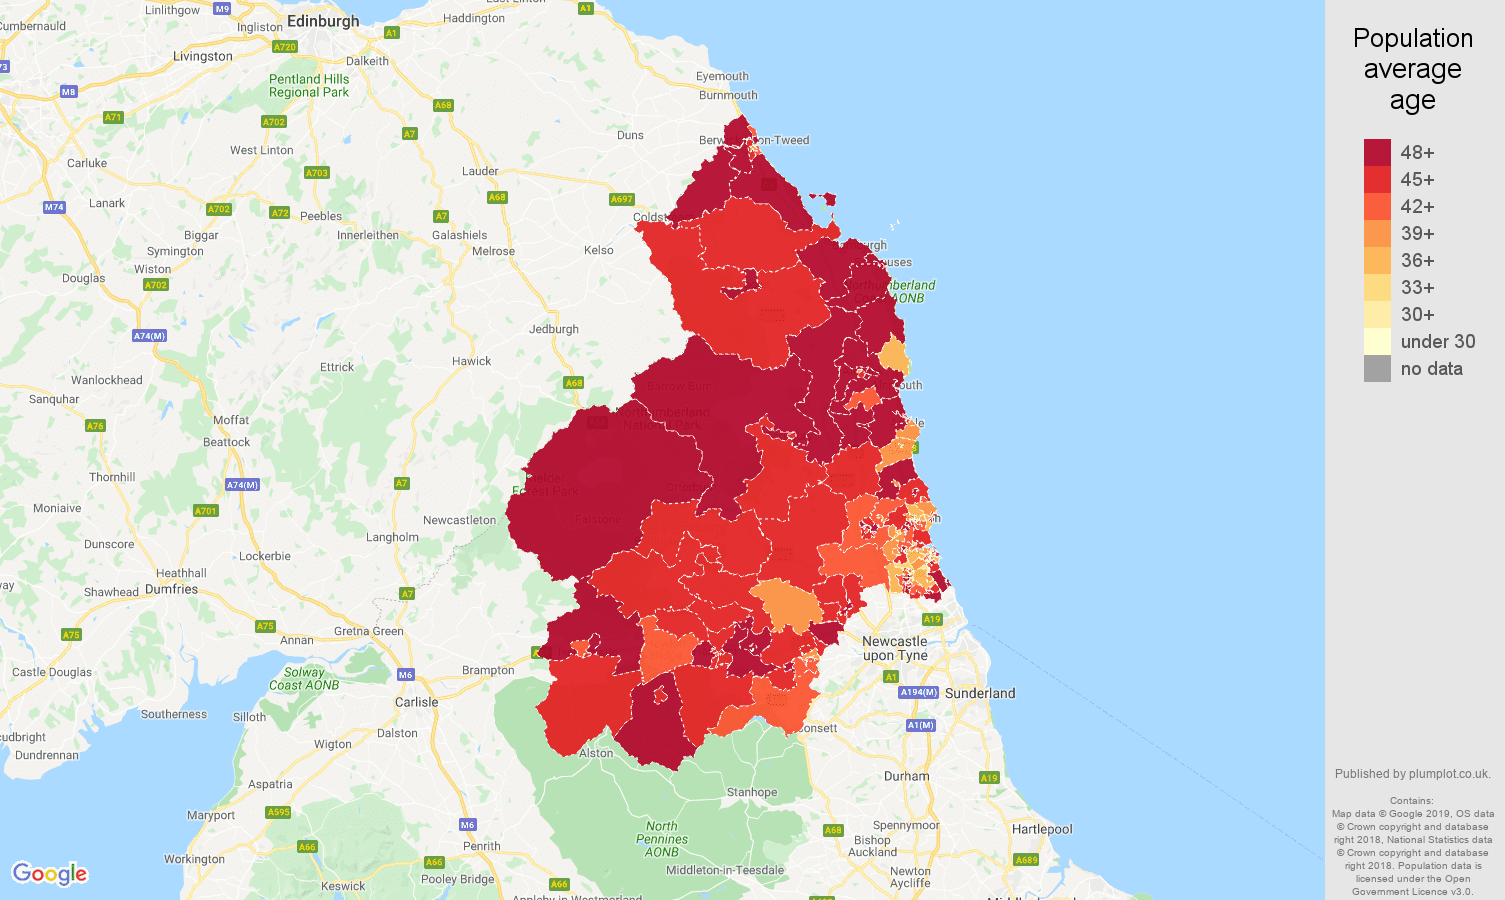 Northumberland population average age map